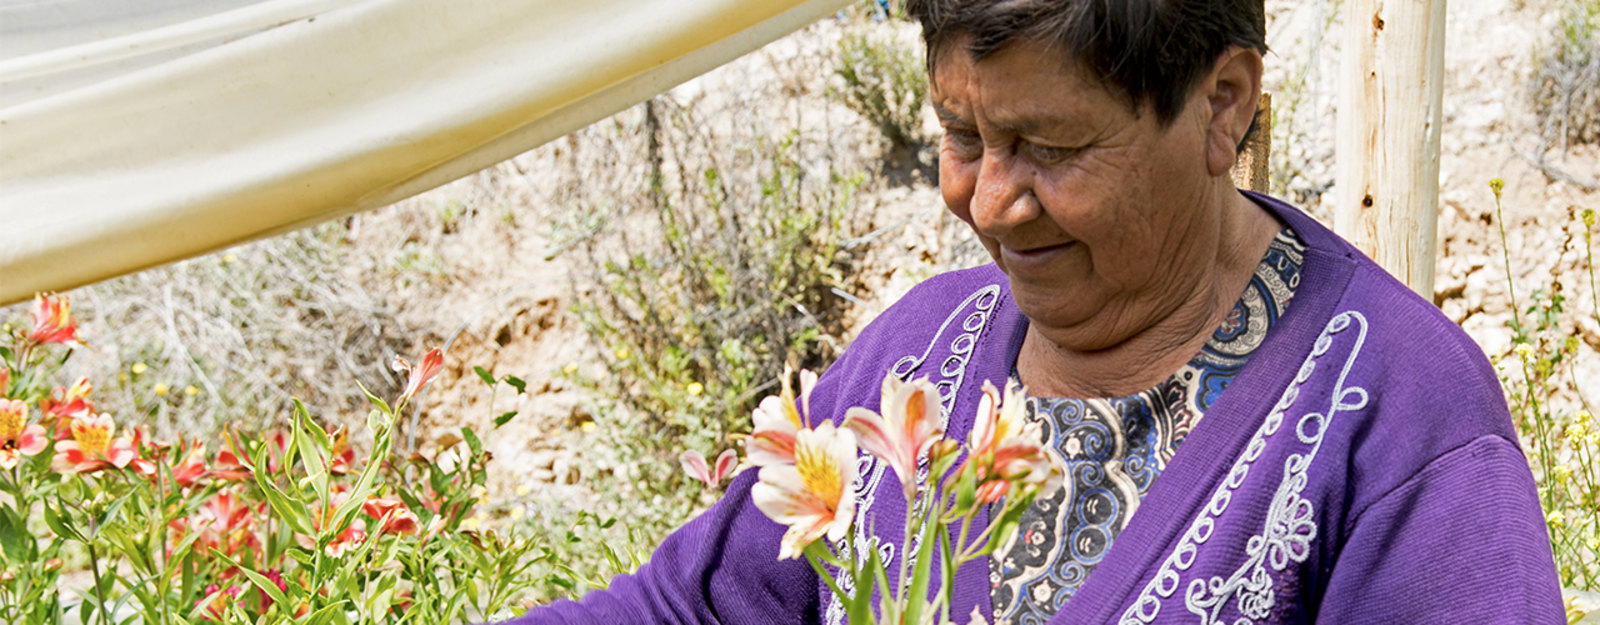 Elderly woman in a purple sweater tending to flowers in a garden.